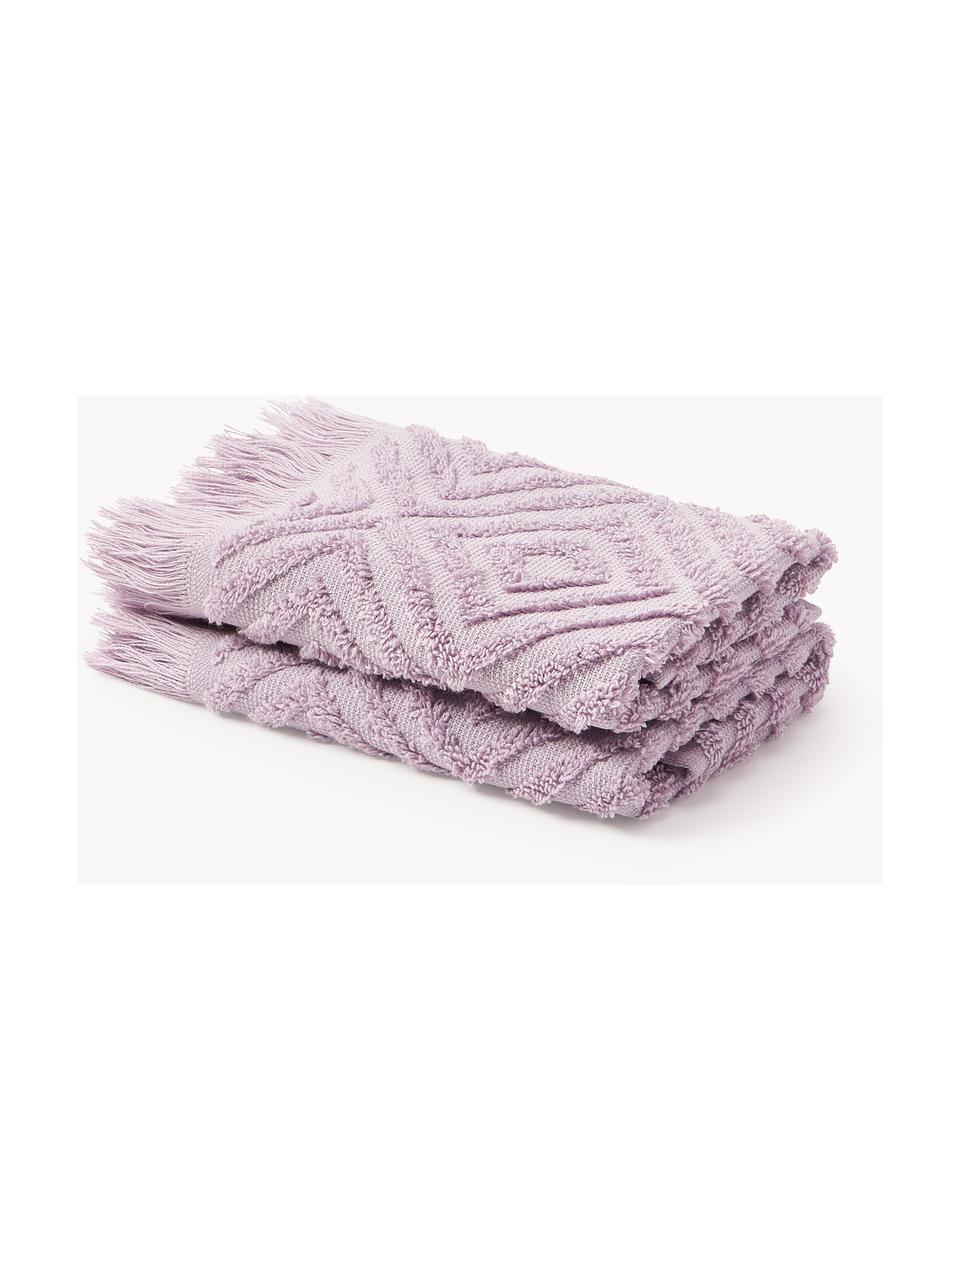 Handdoek Jacqui met hoog-laag patroon, in verschillende formaten, Lavendel, Handdoek, B 50 x L 100 cm, 2 stuks